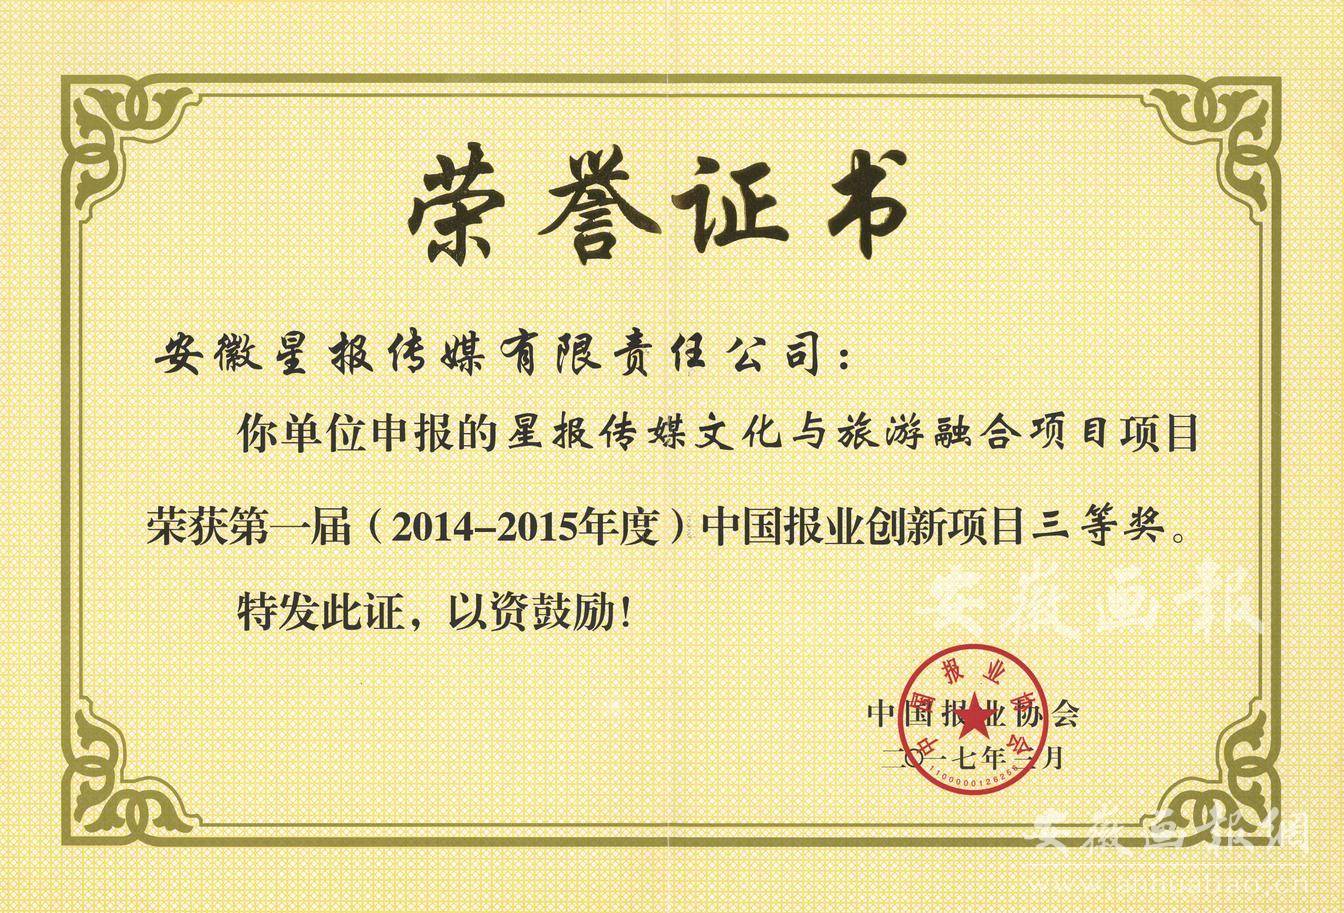 第一届（2014-2015年度）中国报业创新项目三等奖